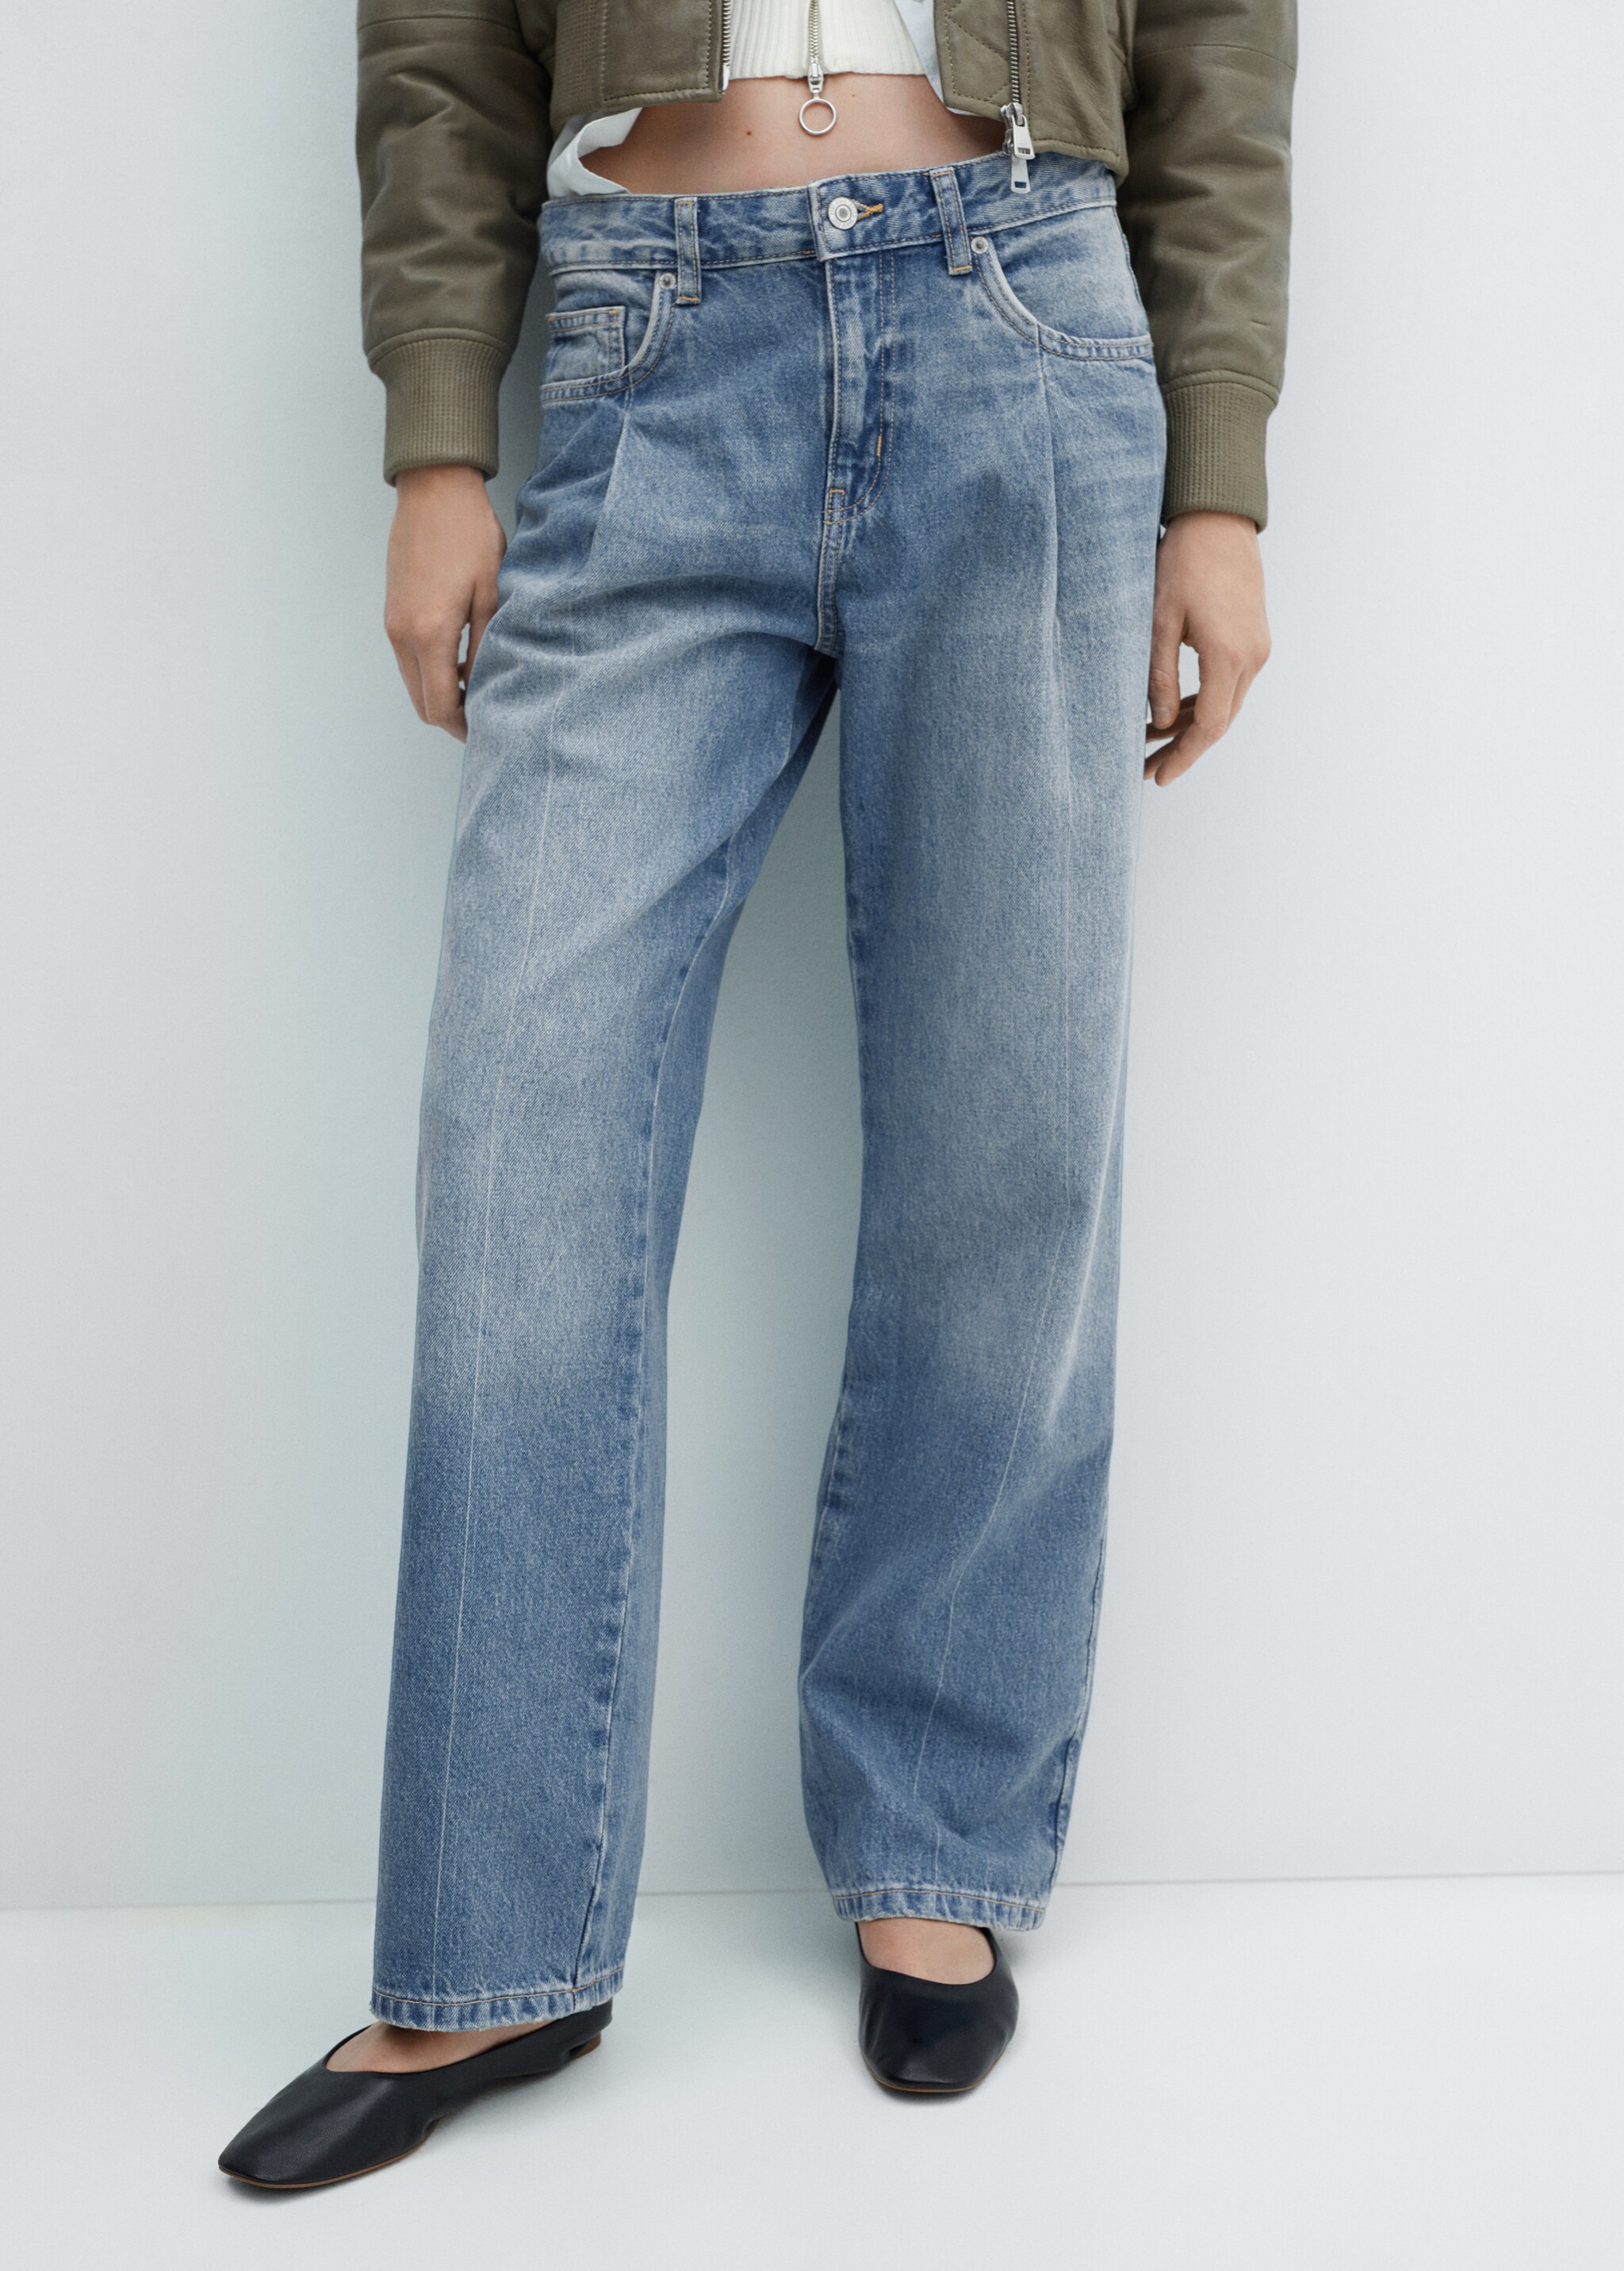 Straight pleated jeans - Medium plane